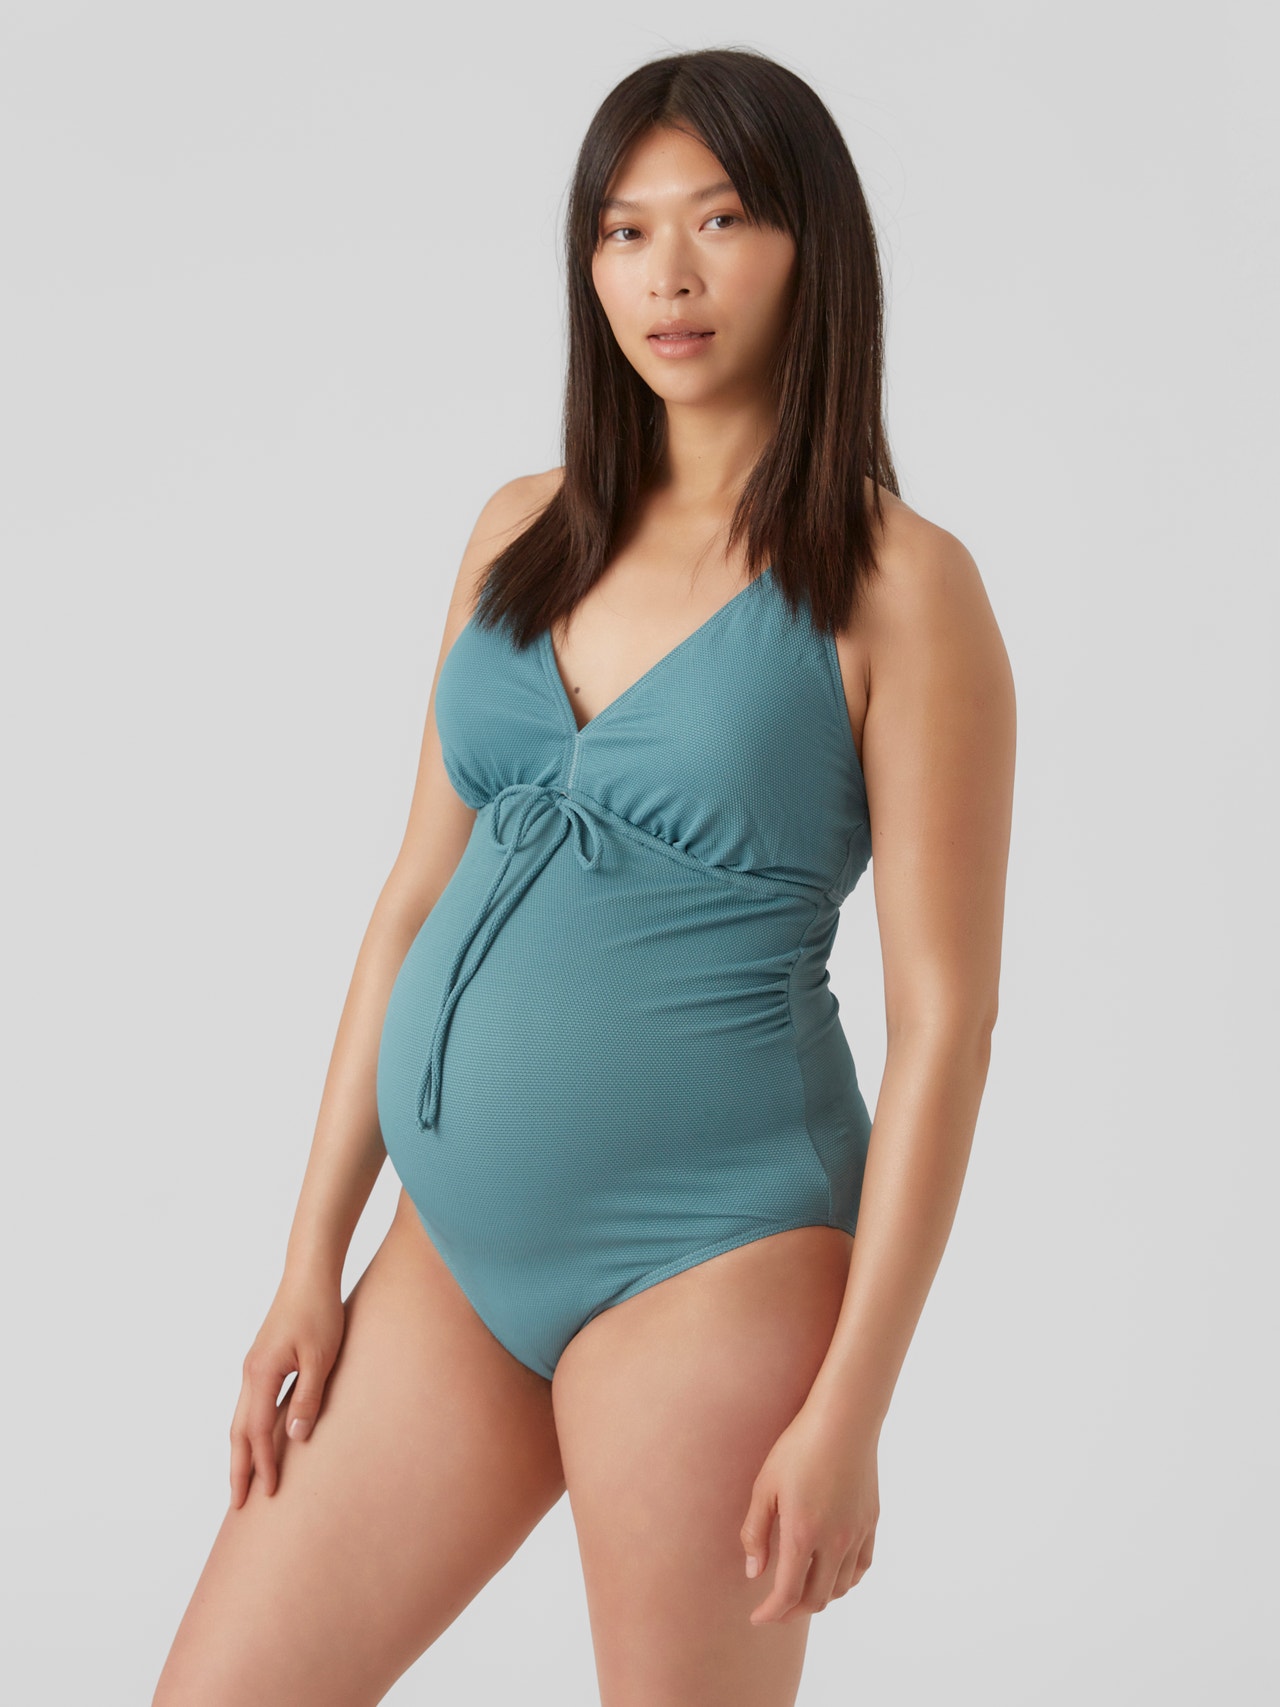 https://images.veromoda.com/20017627/4127231/003/mama-licious-maternity-swimsuit-turquiose.jpg?v=7f50ec380b725db7e7770a803f1e281d&format=webp&width=1280&quality=90&key=25-0-3